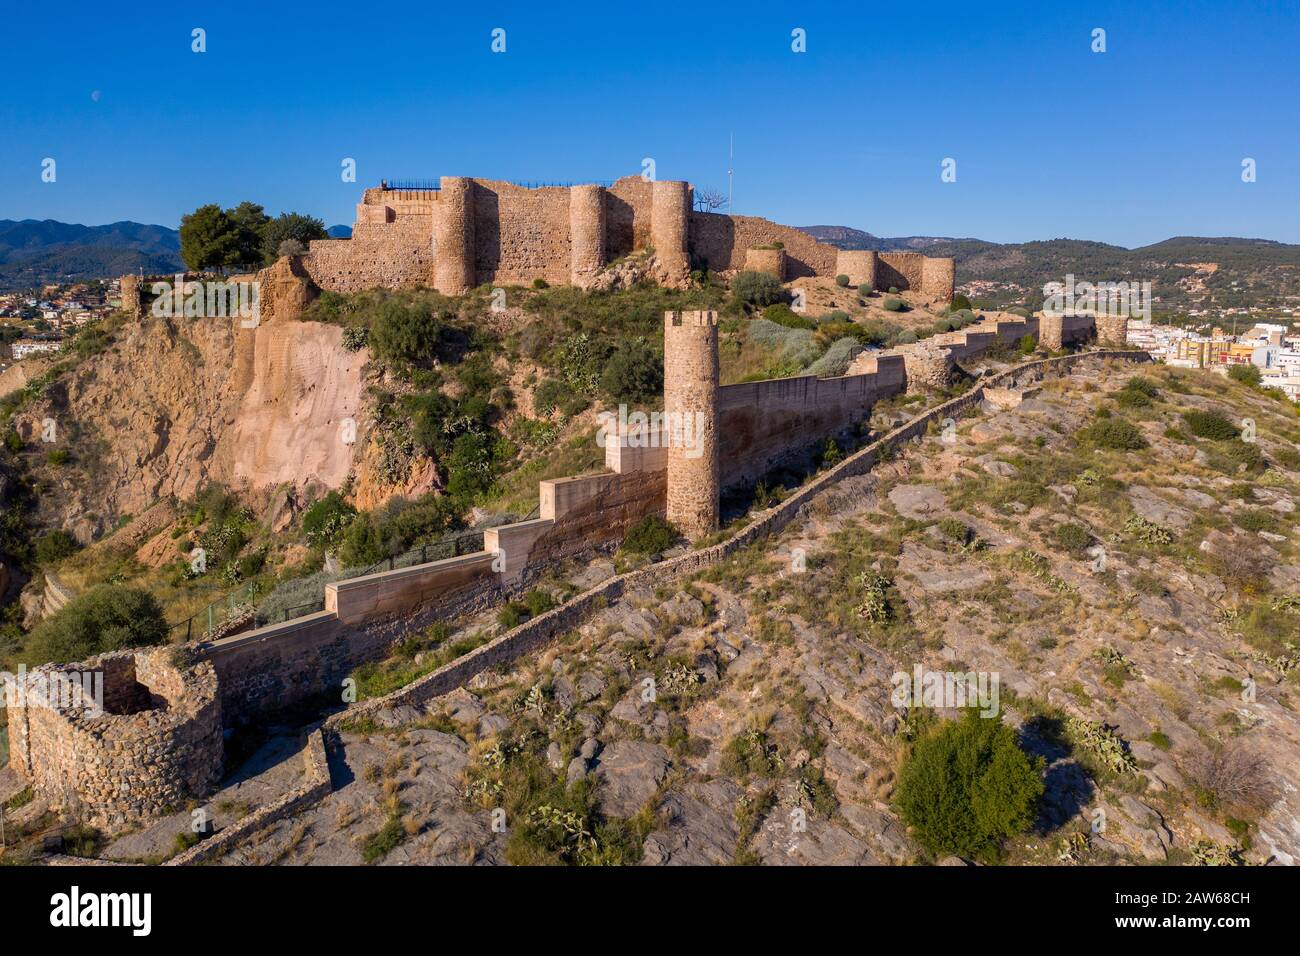 Luftbild der mittelalterlichen Onda teilweise restaurierte mittelalterliche Burgruine in Spanien mit konzentrischen Wänden, halbrunden Türmen, Innen- und vorburg Stockfoto